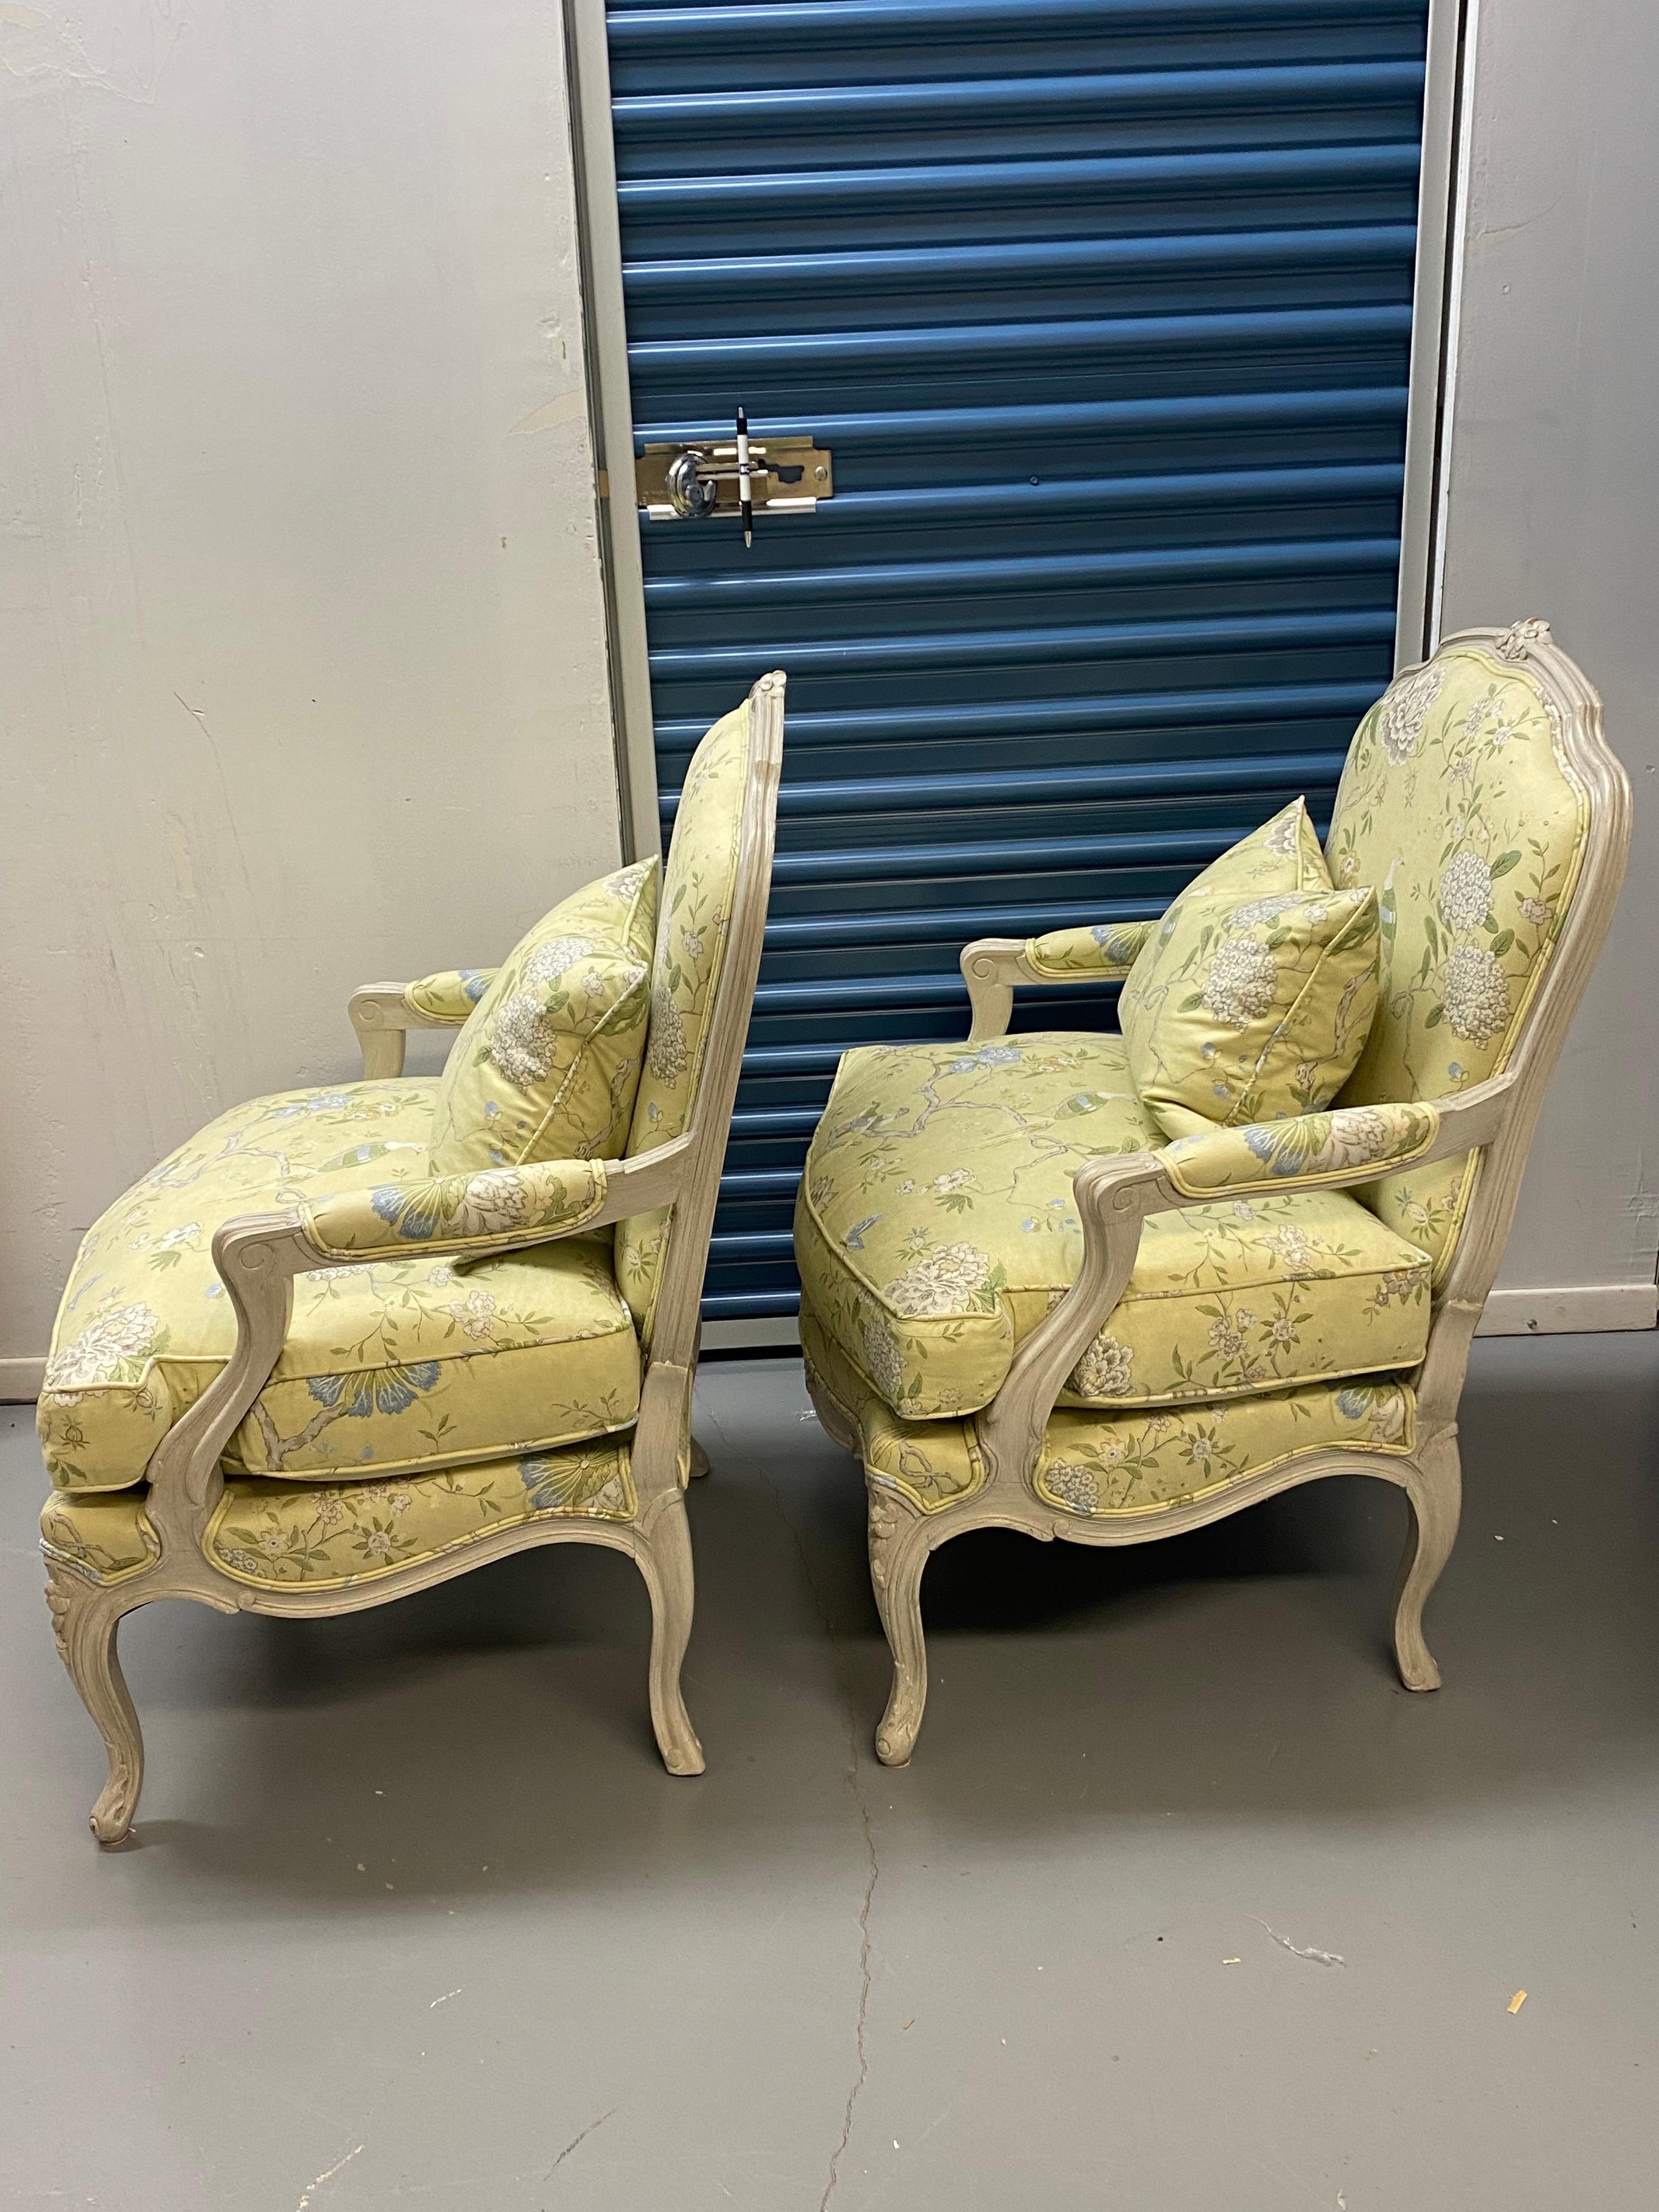 Paire de fauteuils rembourrés de style Louis XV du 20e siècle
Paire de fauteuils de style Louis XV en bois peint gris-blanc, tapissés d'un tissu chinoiserie en coton vert-jaune. 
Légère usure de la finition des pieds. La sellerie est en bon état